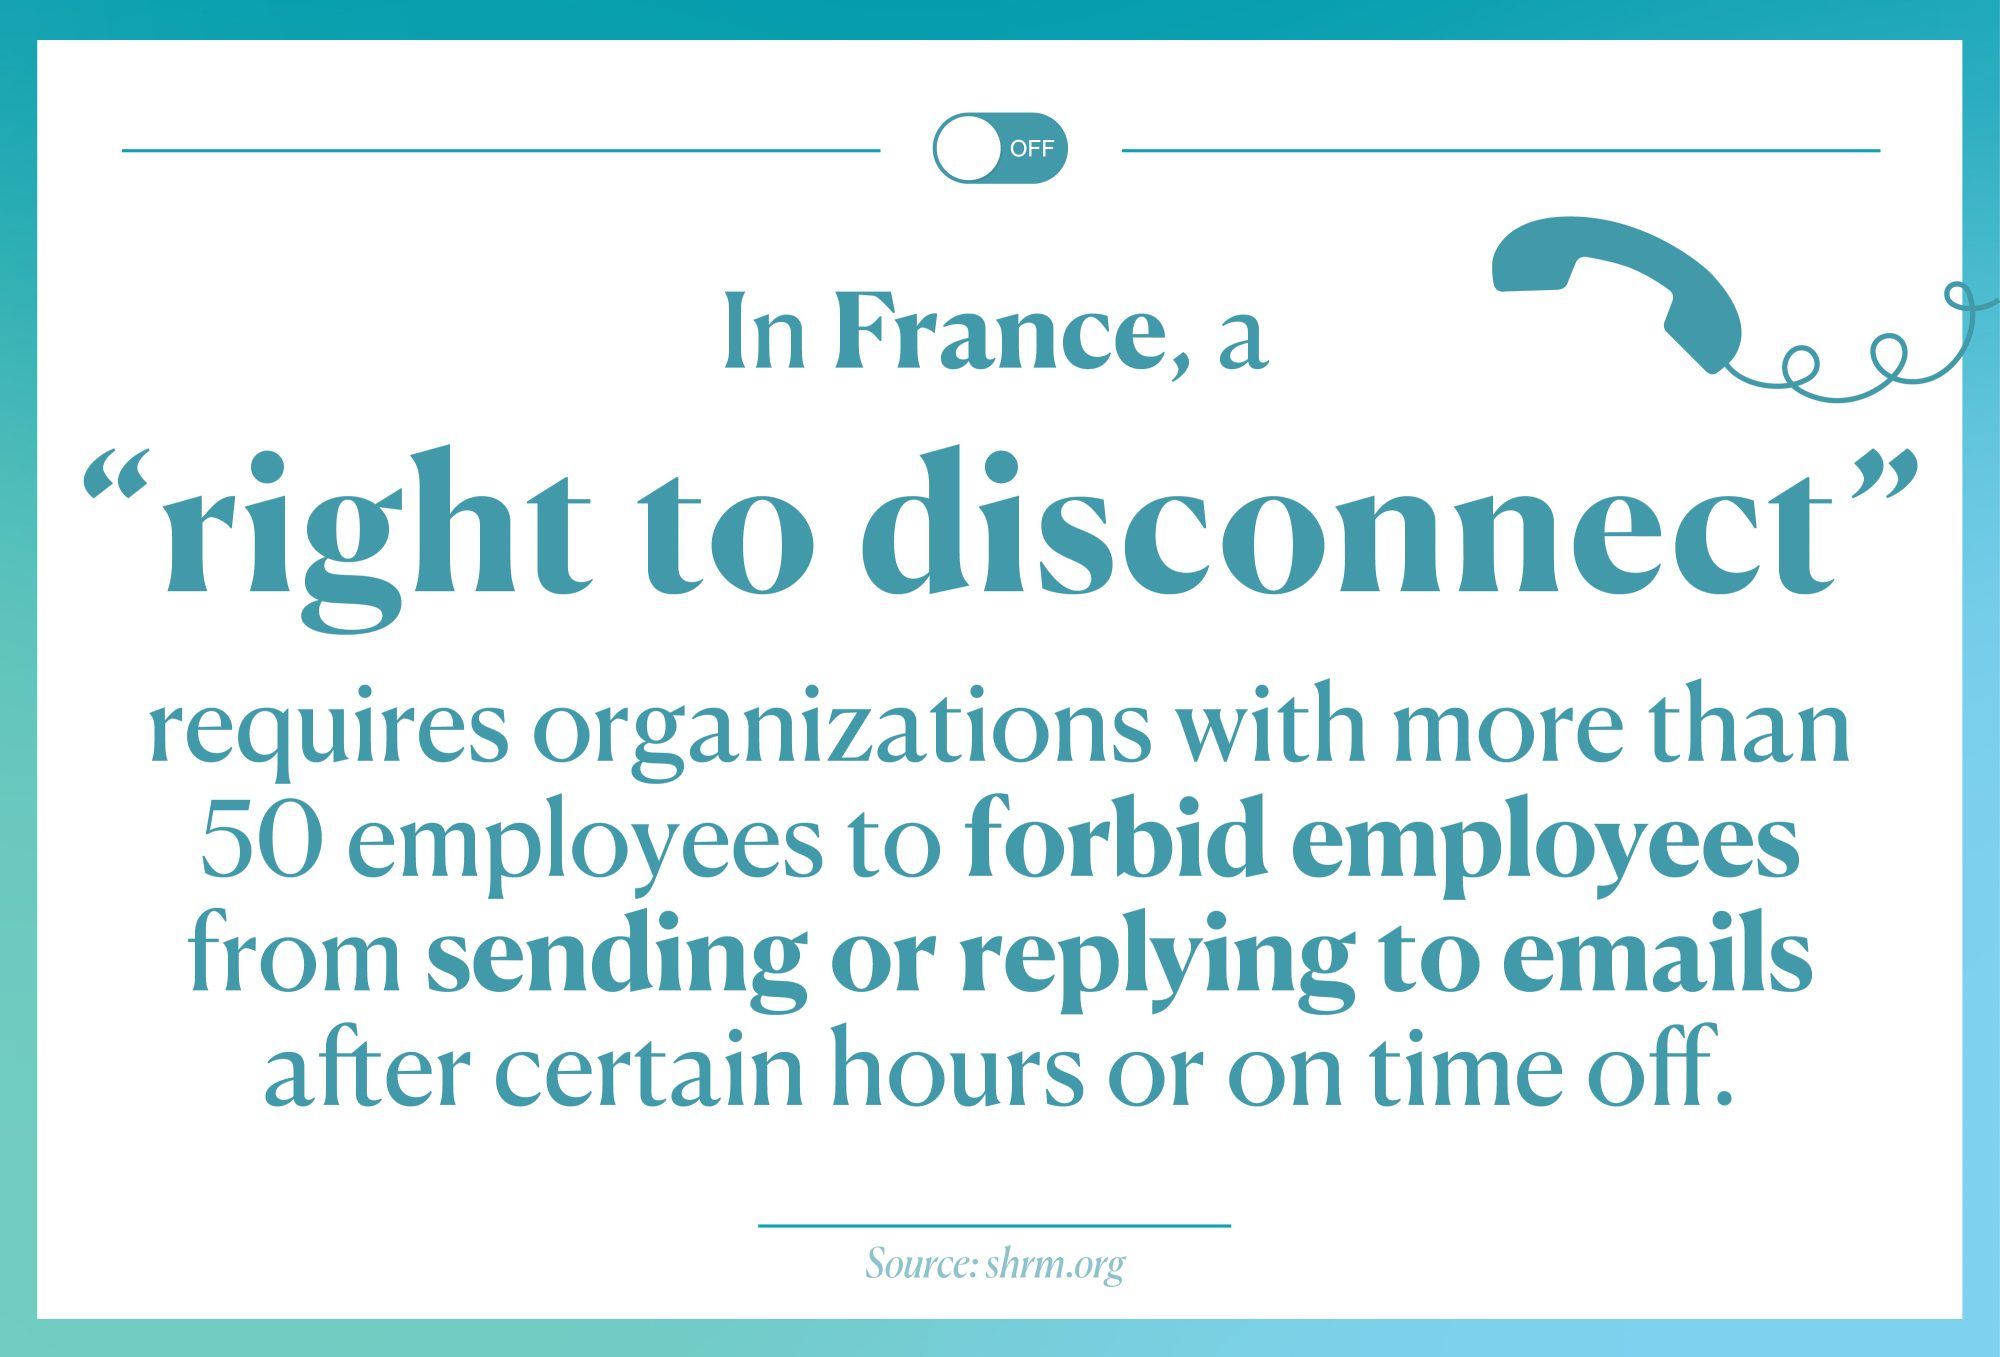 Prantsusmaa õigus töölt lahti ühendada. peale tööaega kirju ei saada